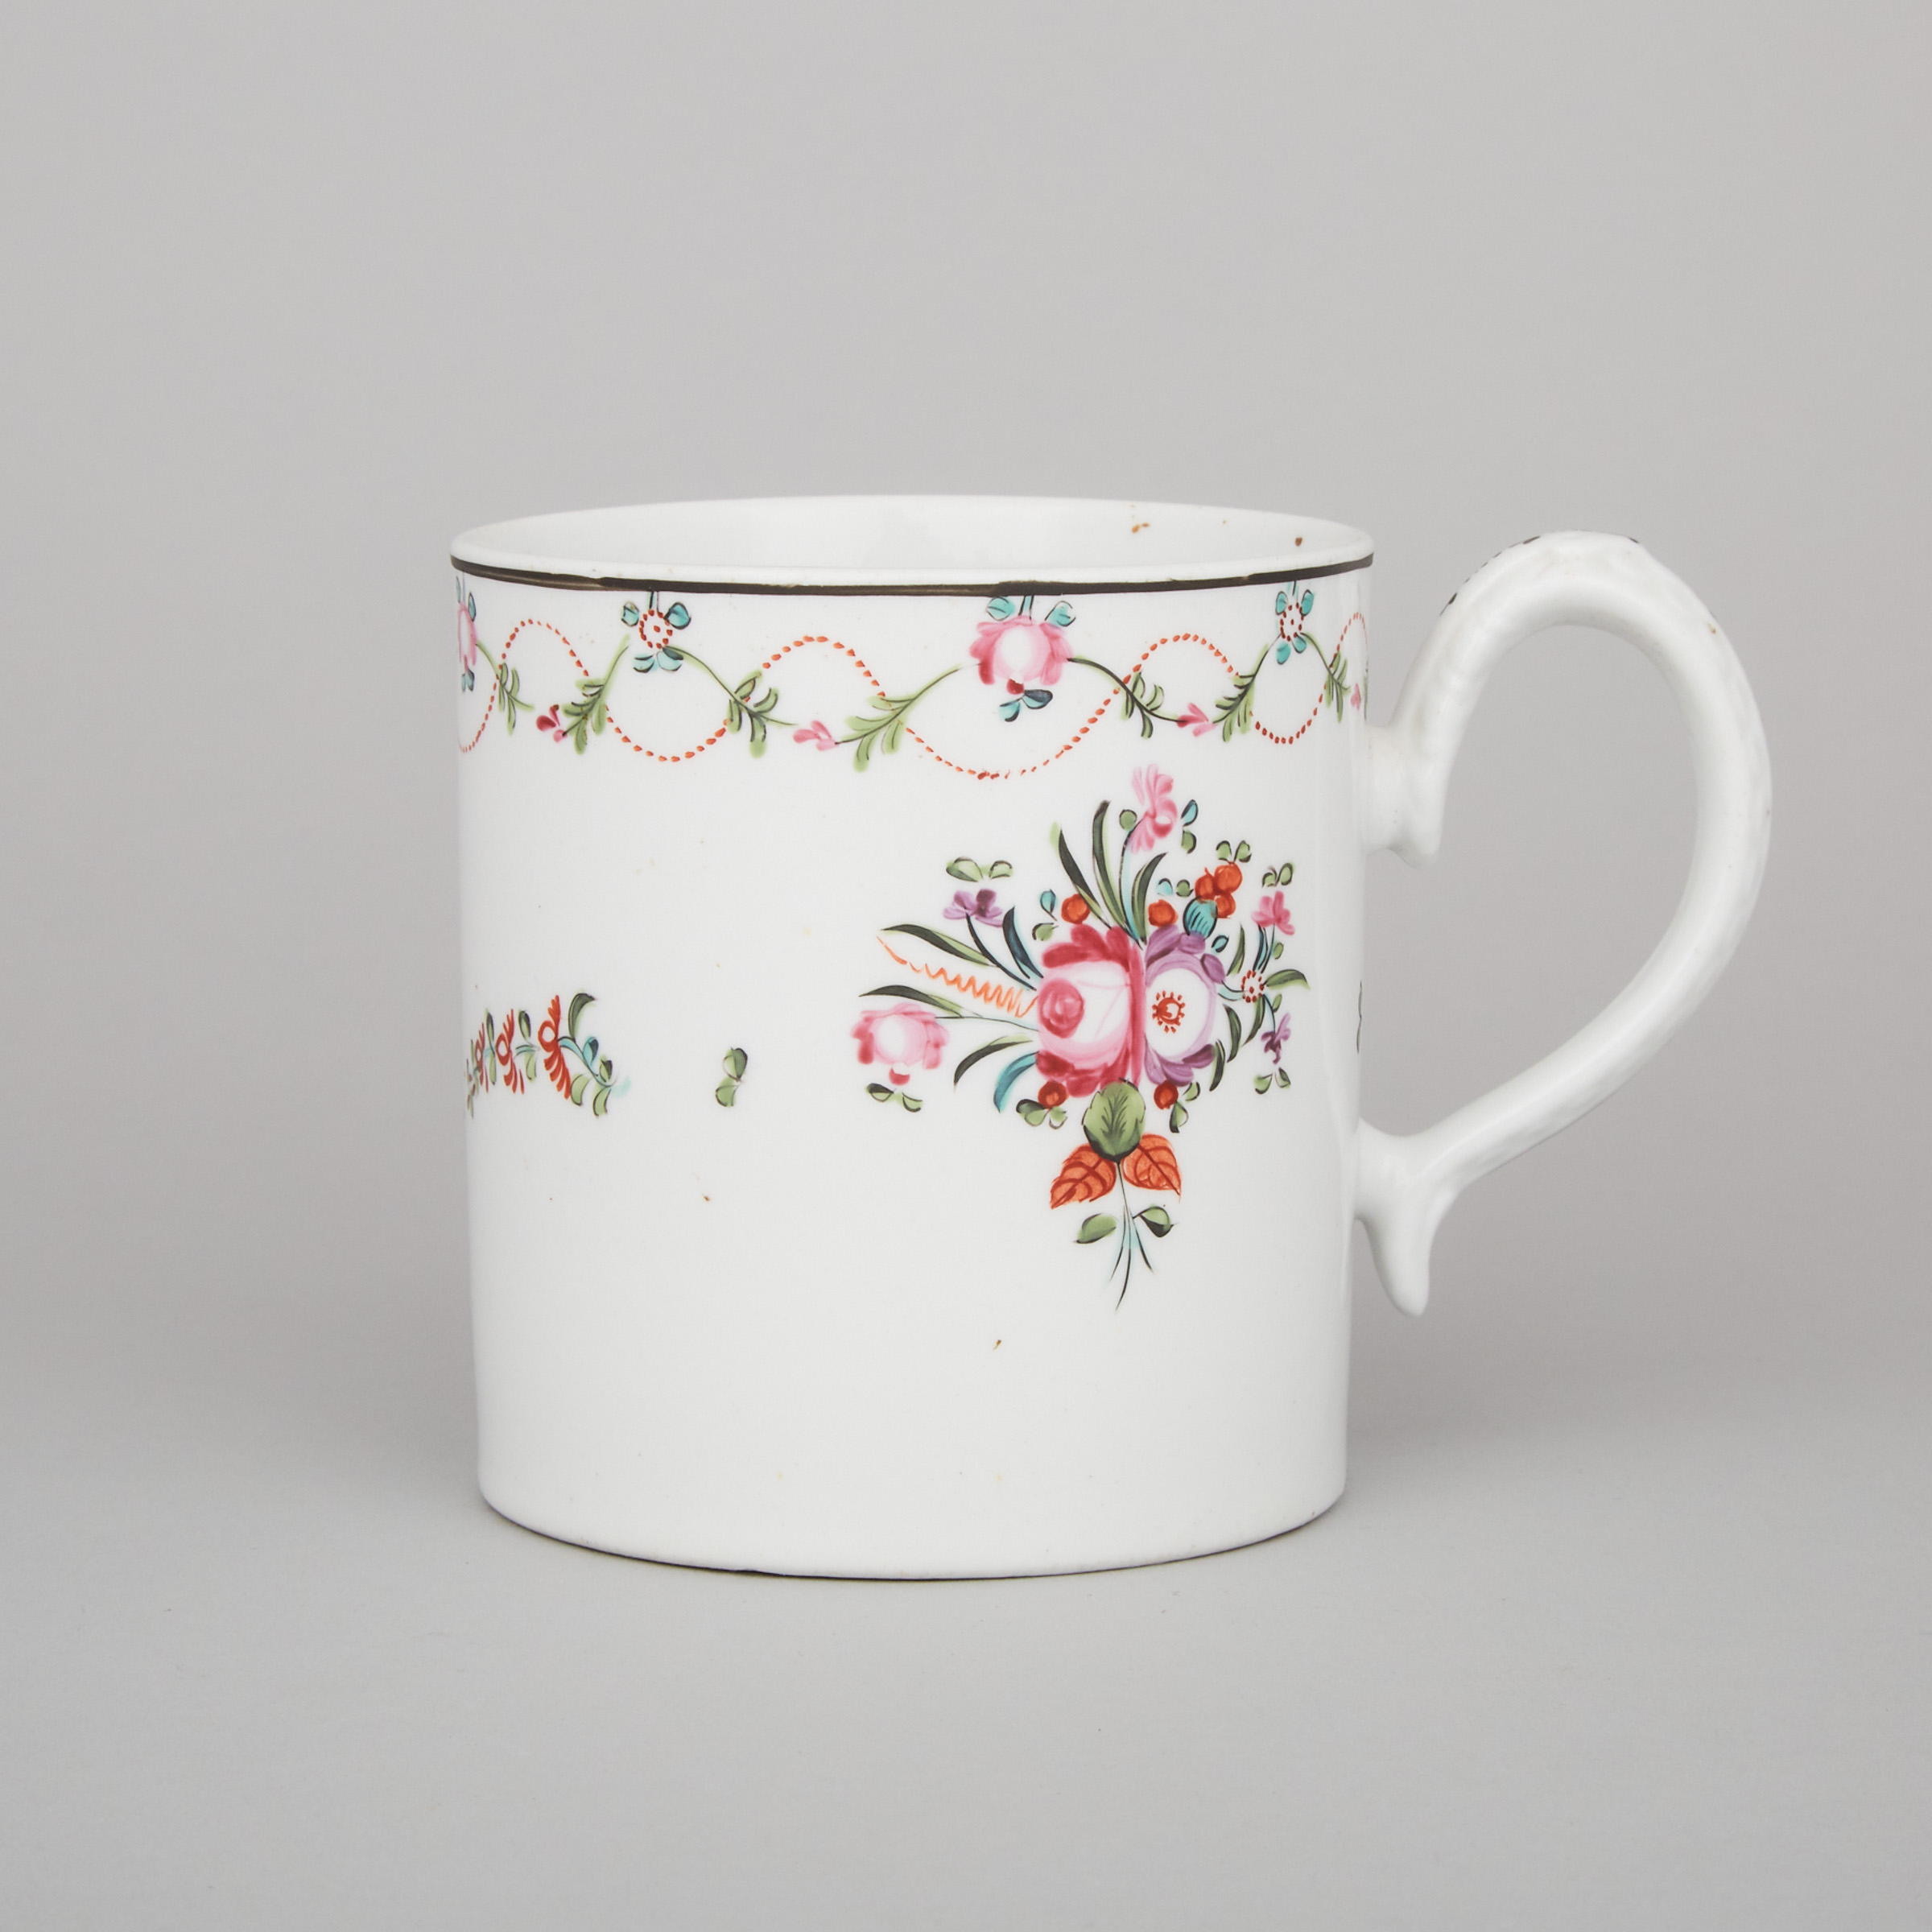 New Hall Mug, c.1785-90